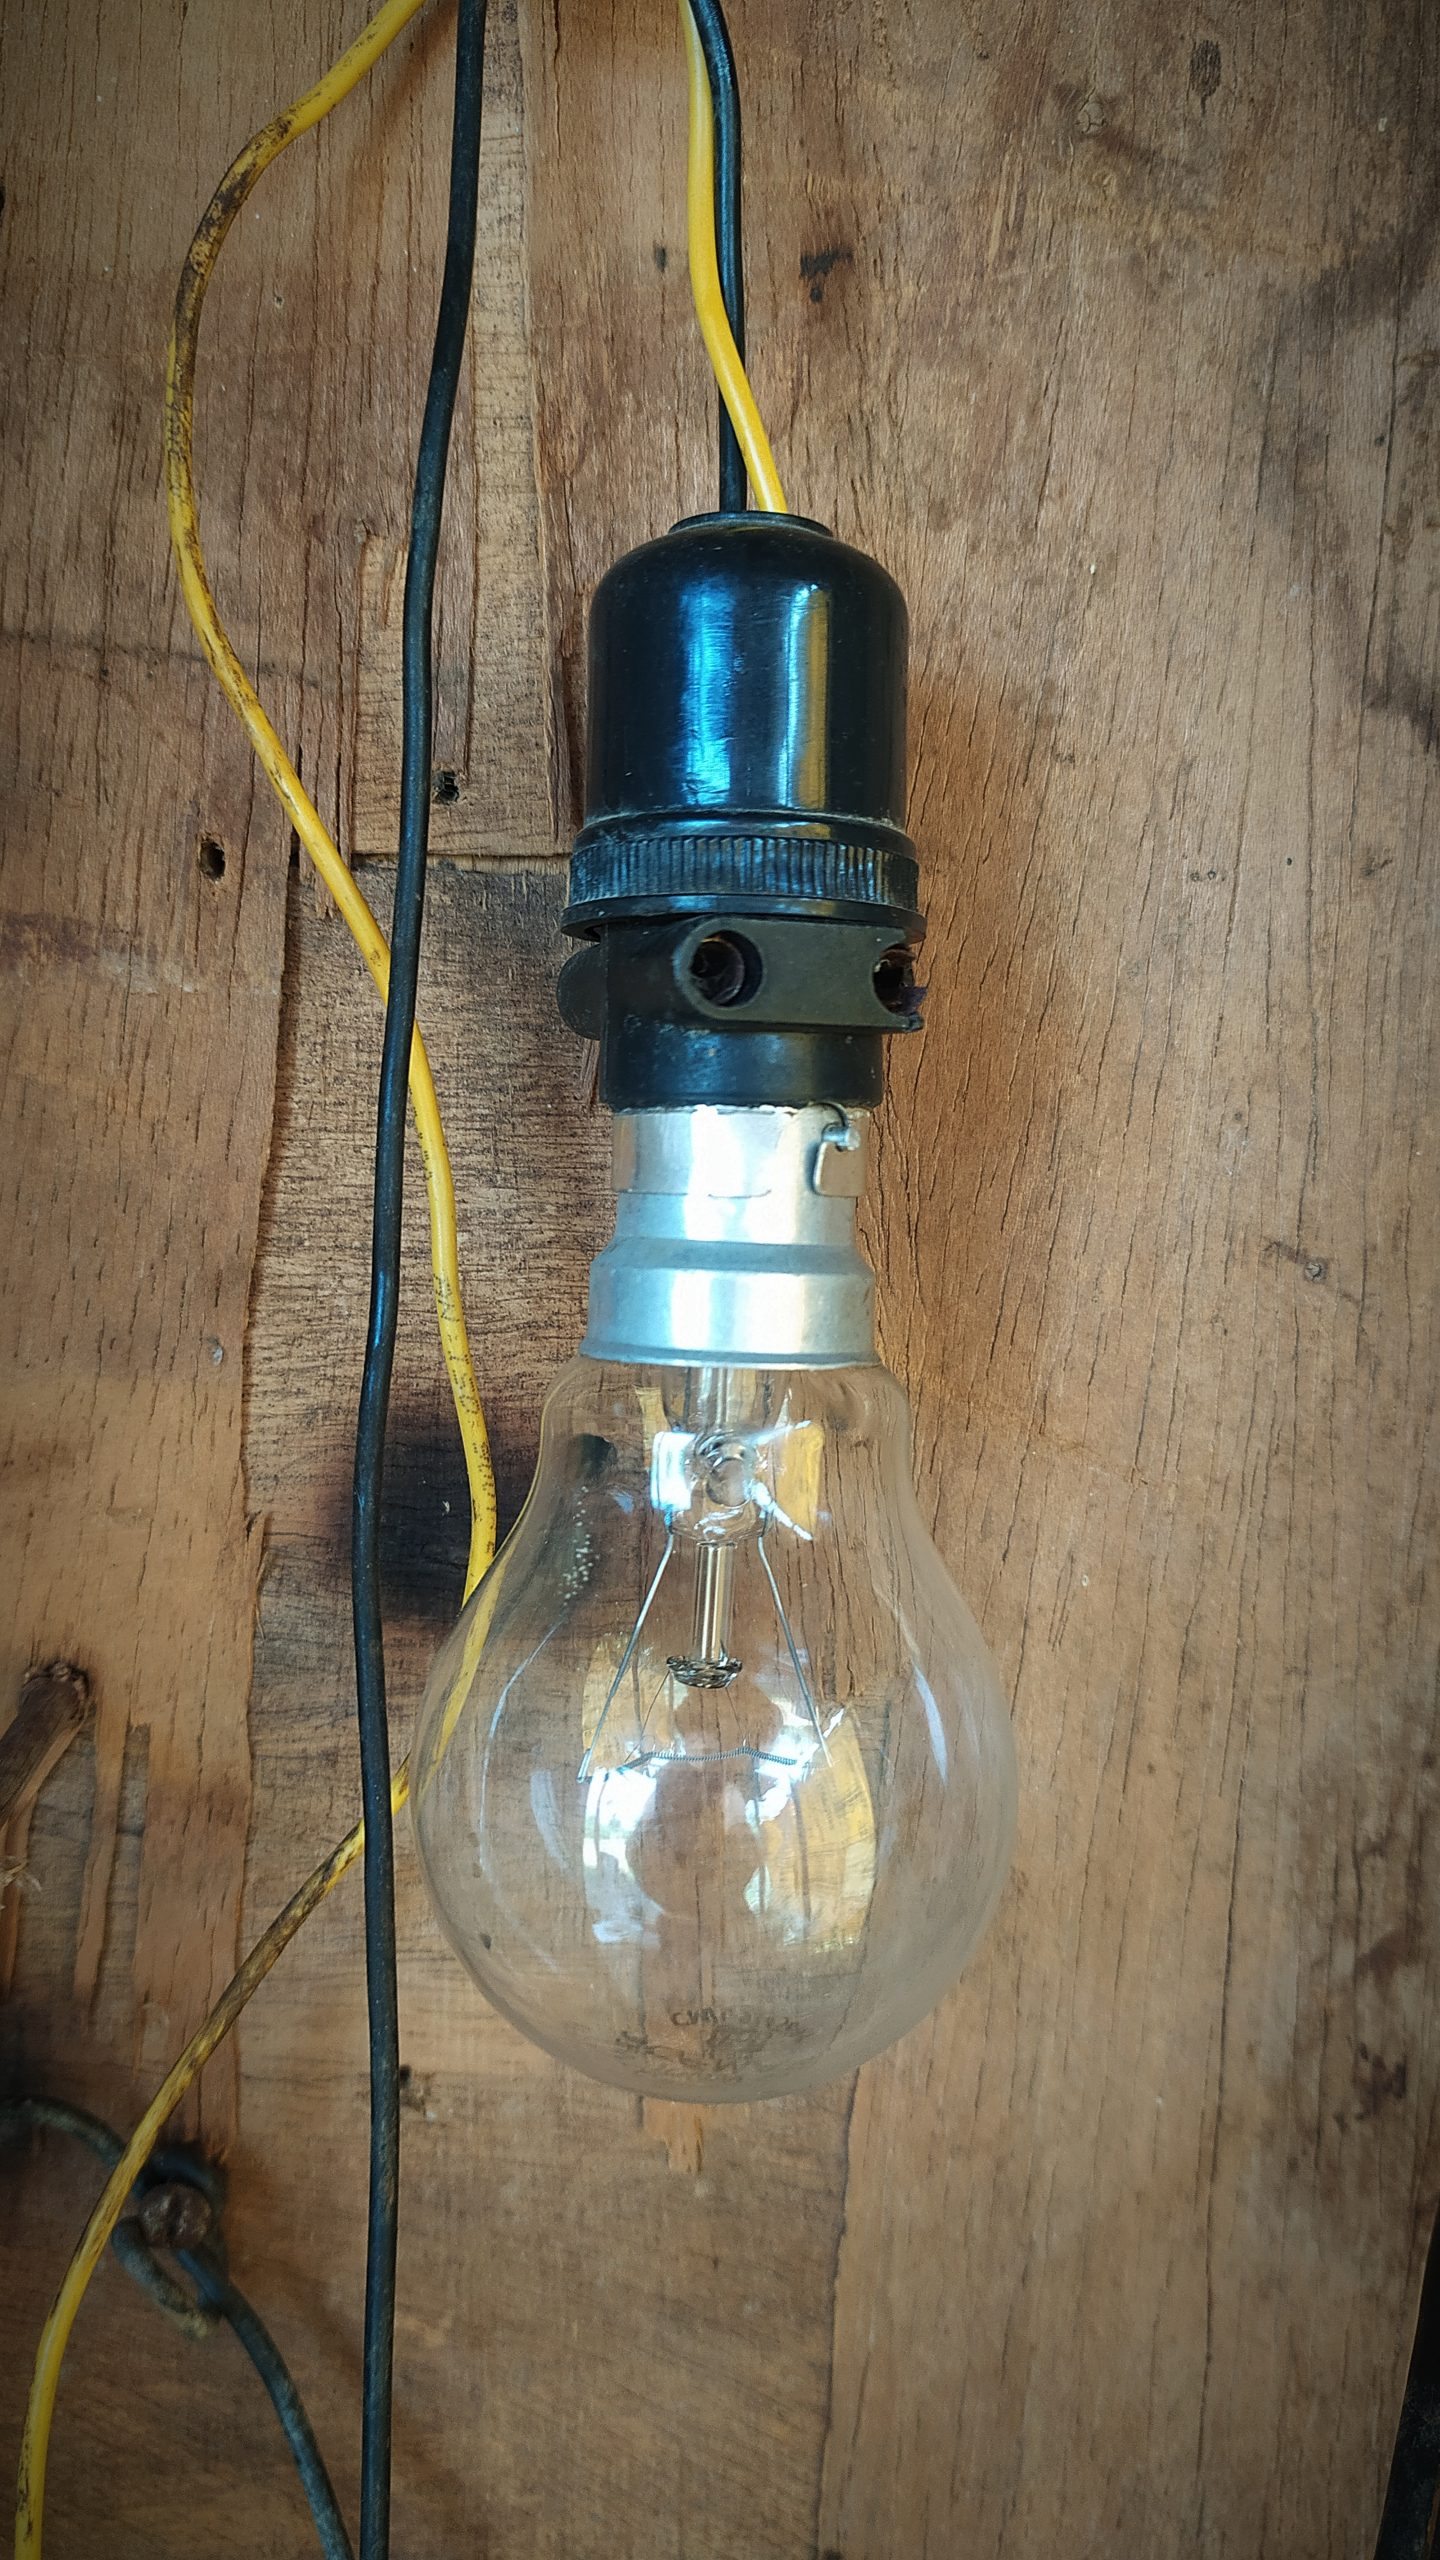 An incandescent light bulb